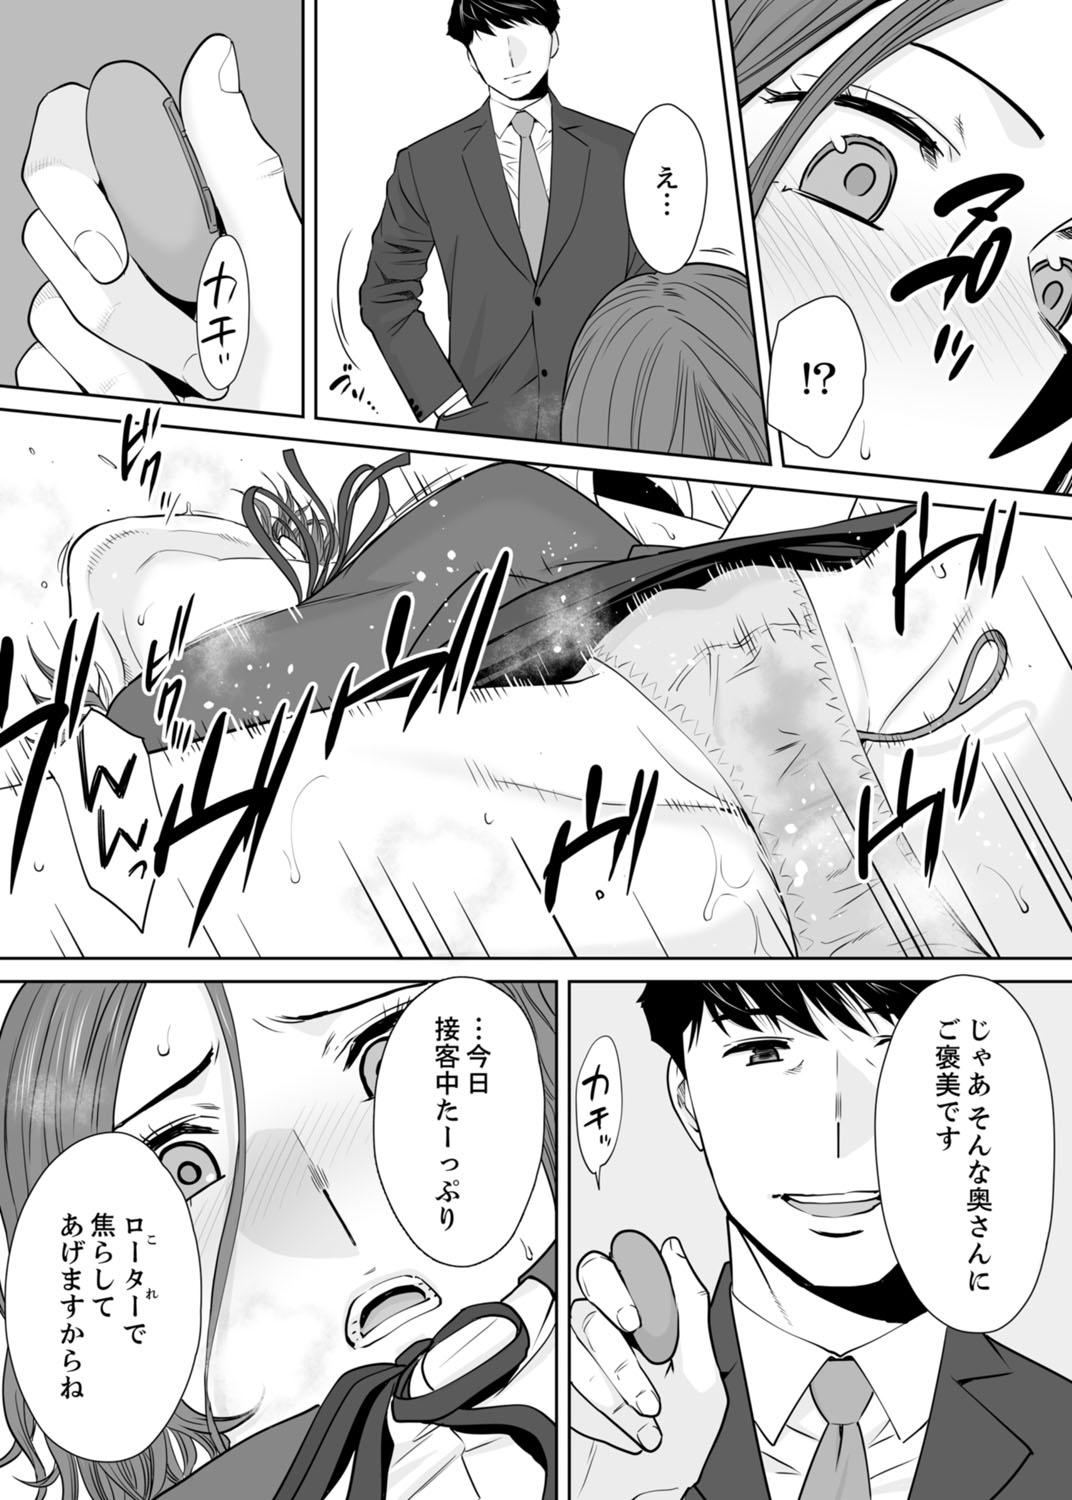 Longhair "Otto no Buka ni Ikasarechau..." Aragaezu Kanjite Shimau Furinzuma 11 8teen - Page 10